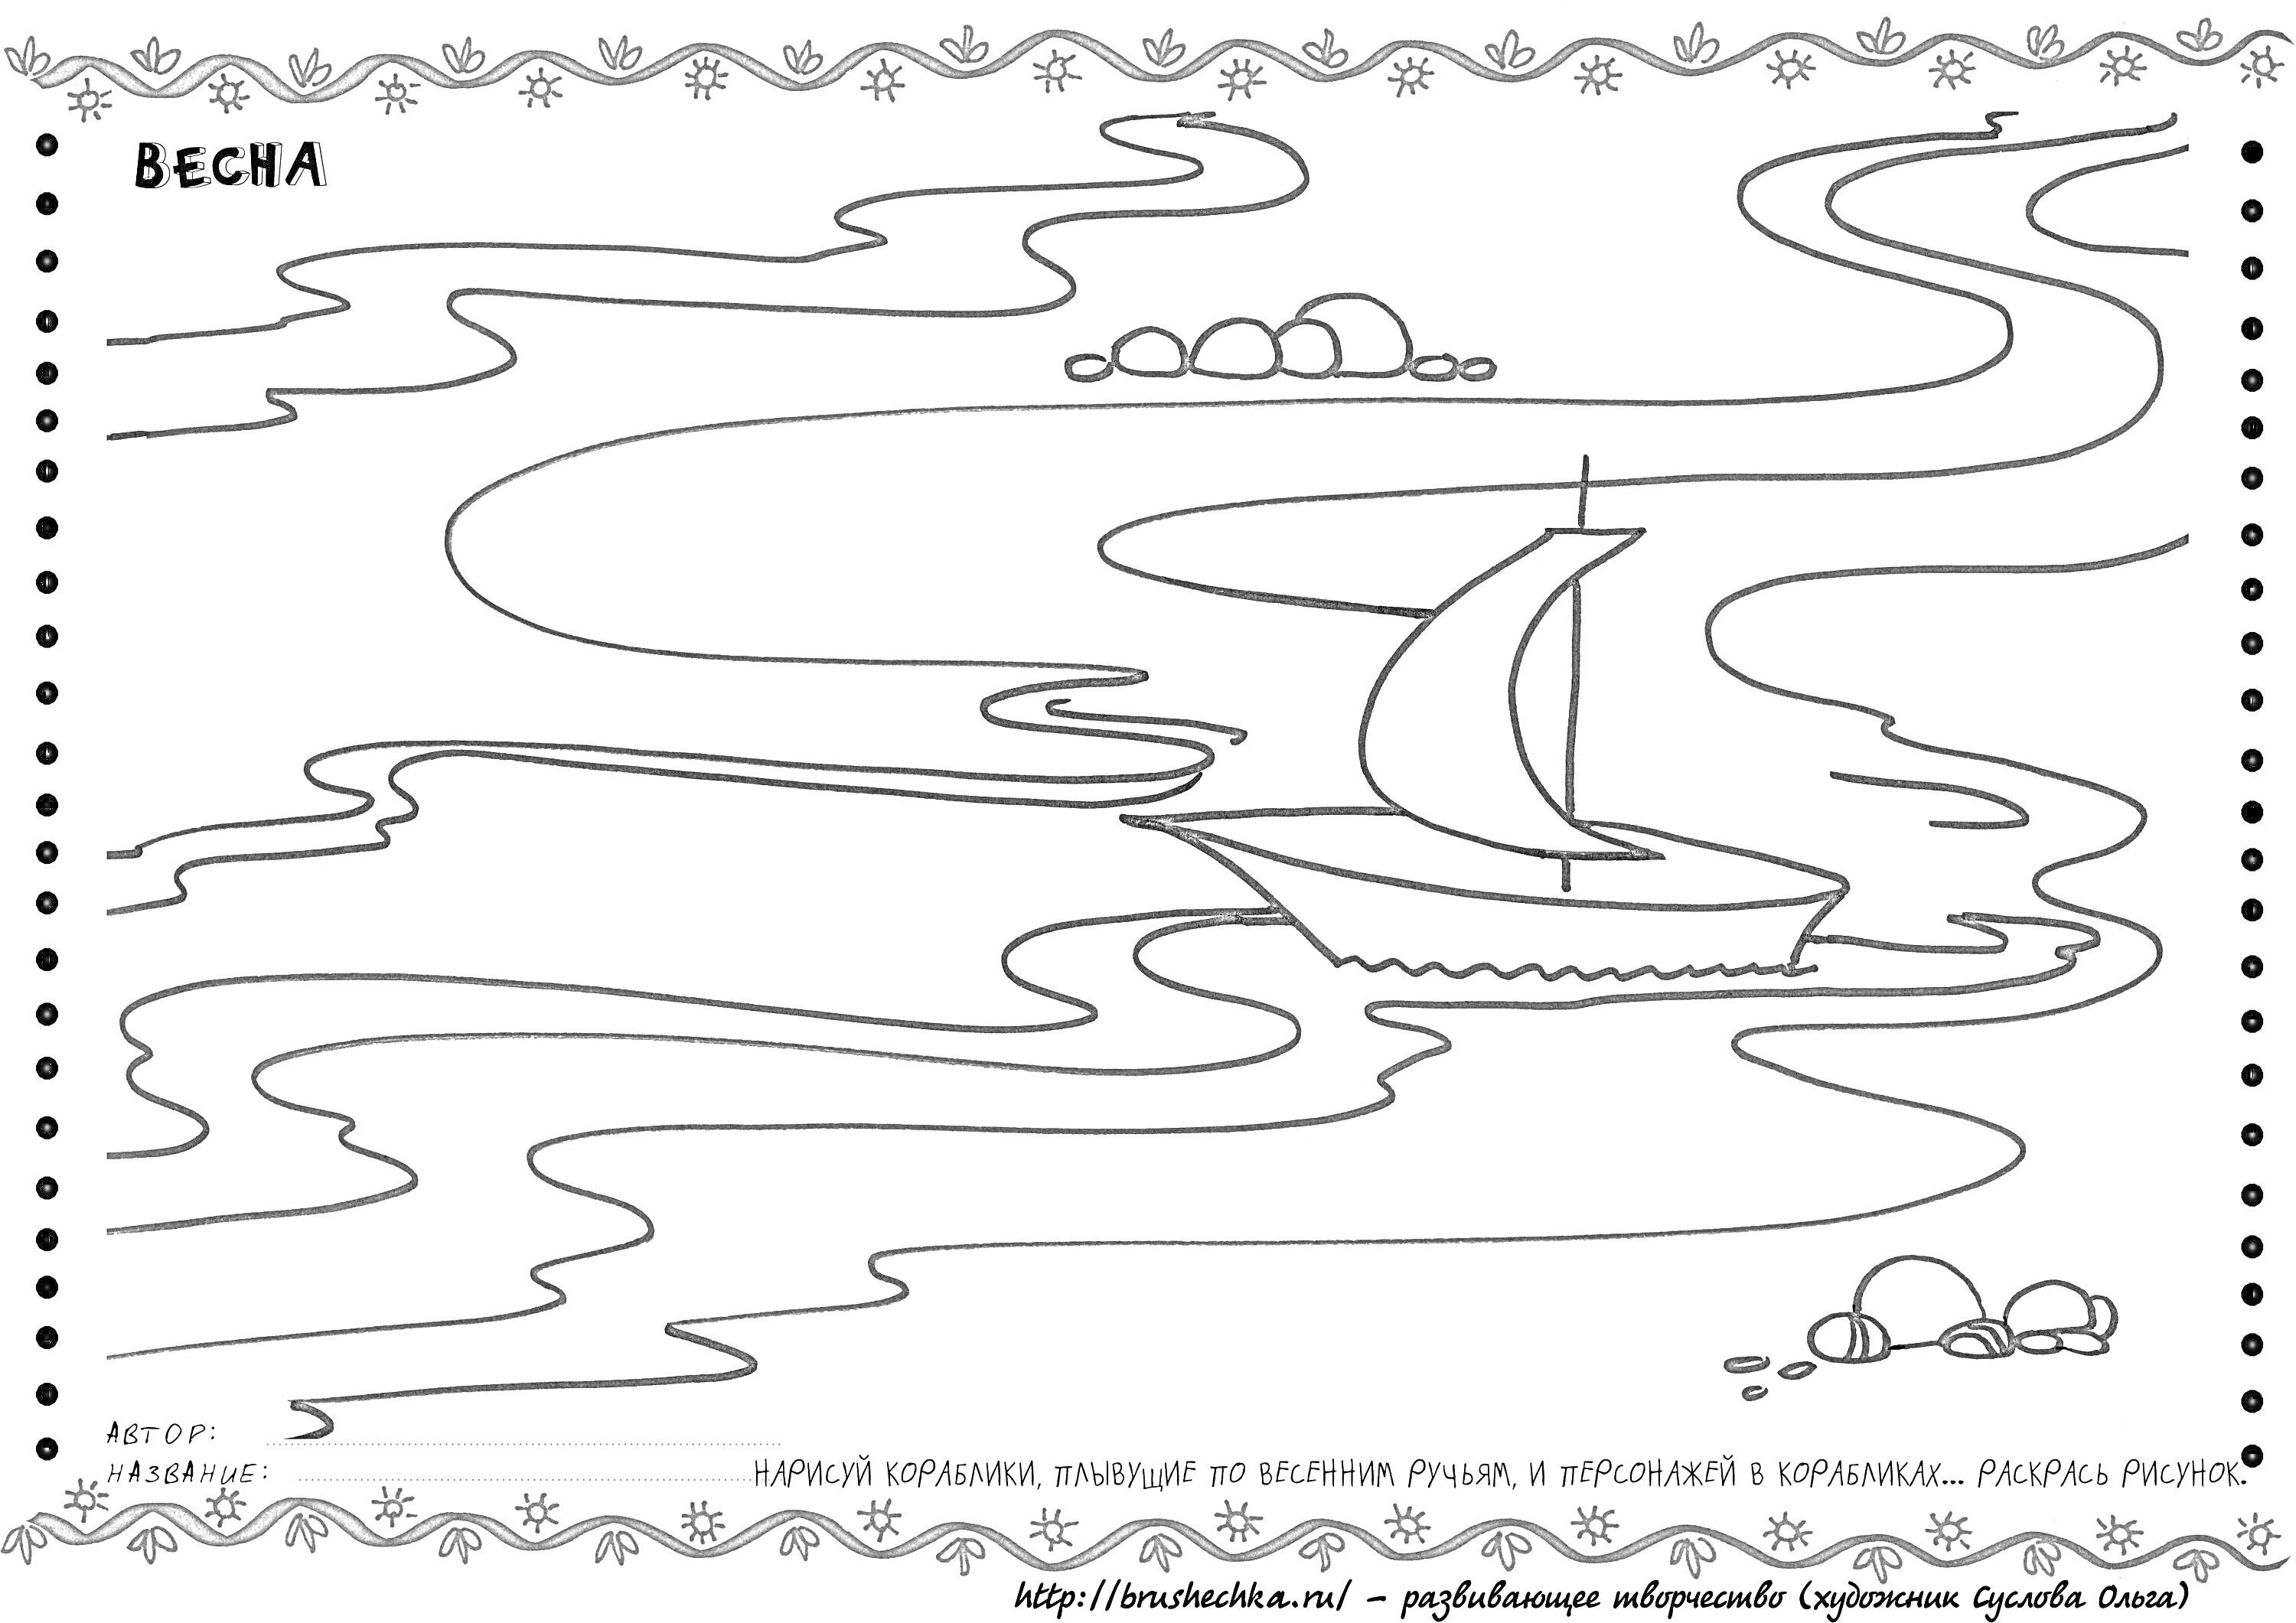 Раскраска Весна на Волге. Парусная лодка на реке с облаками на заднем плане и берегом с камнями.